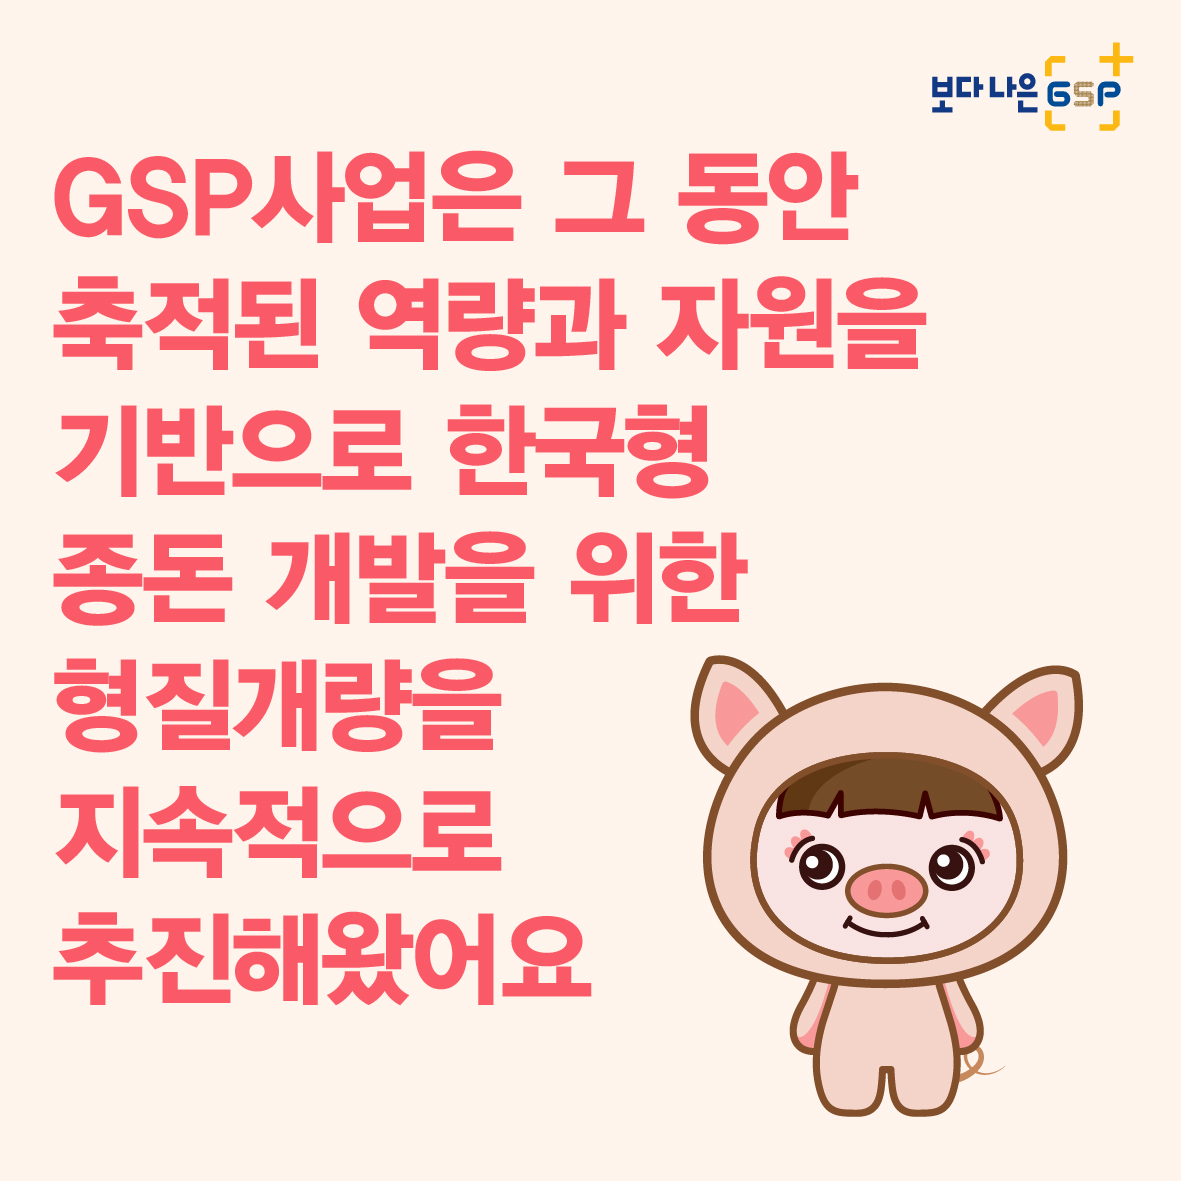 친절한 종자씨와 함께하는 GSP 품종뉴스 - 종돈편 카드뉴스_종돈편-04.jpg